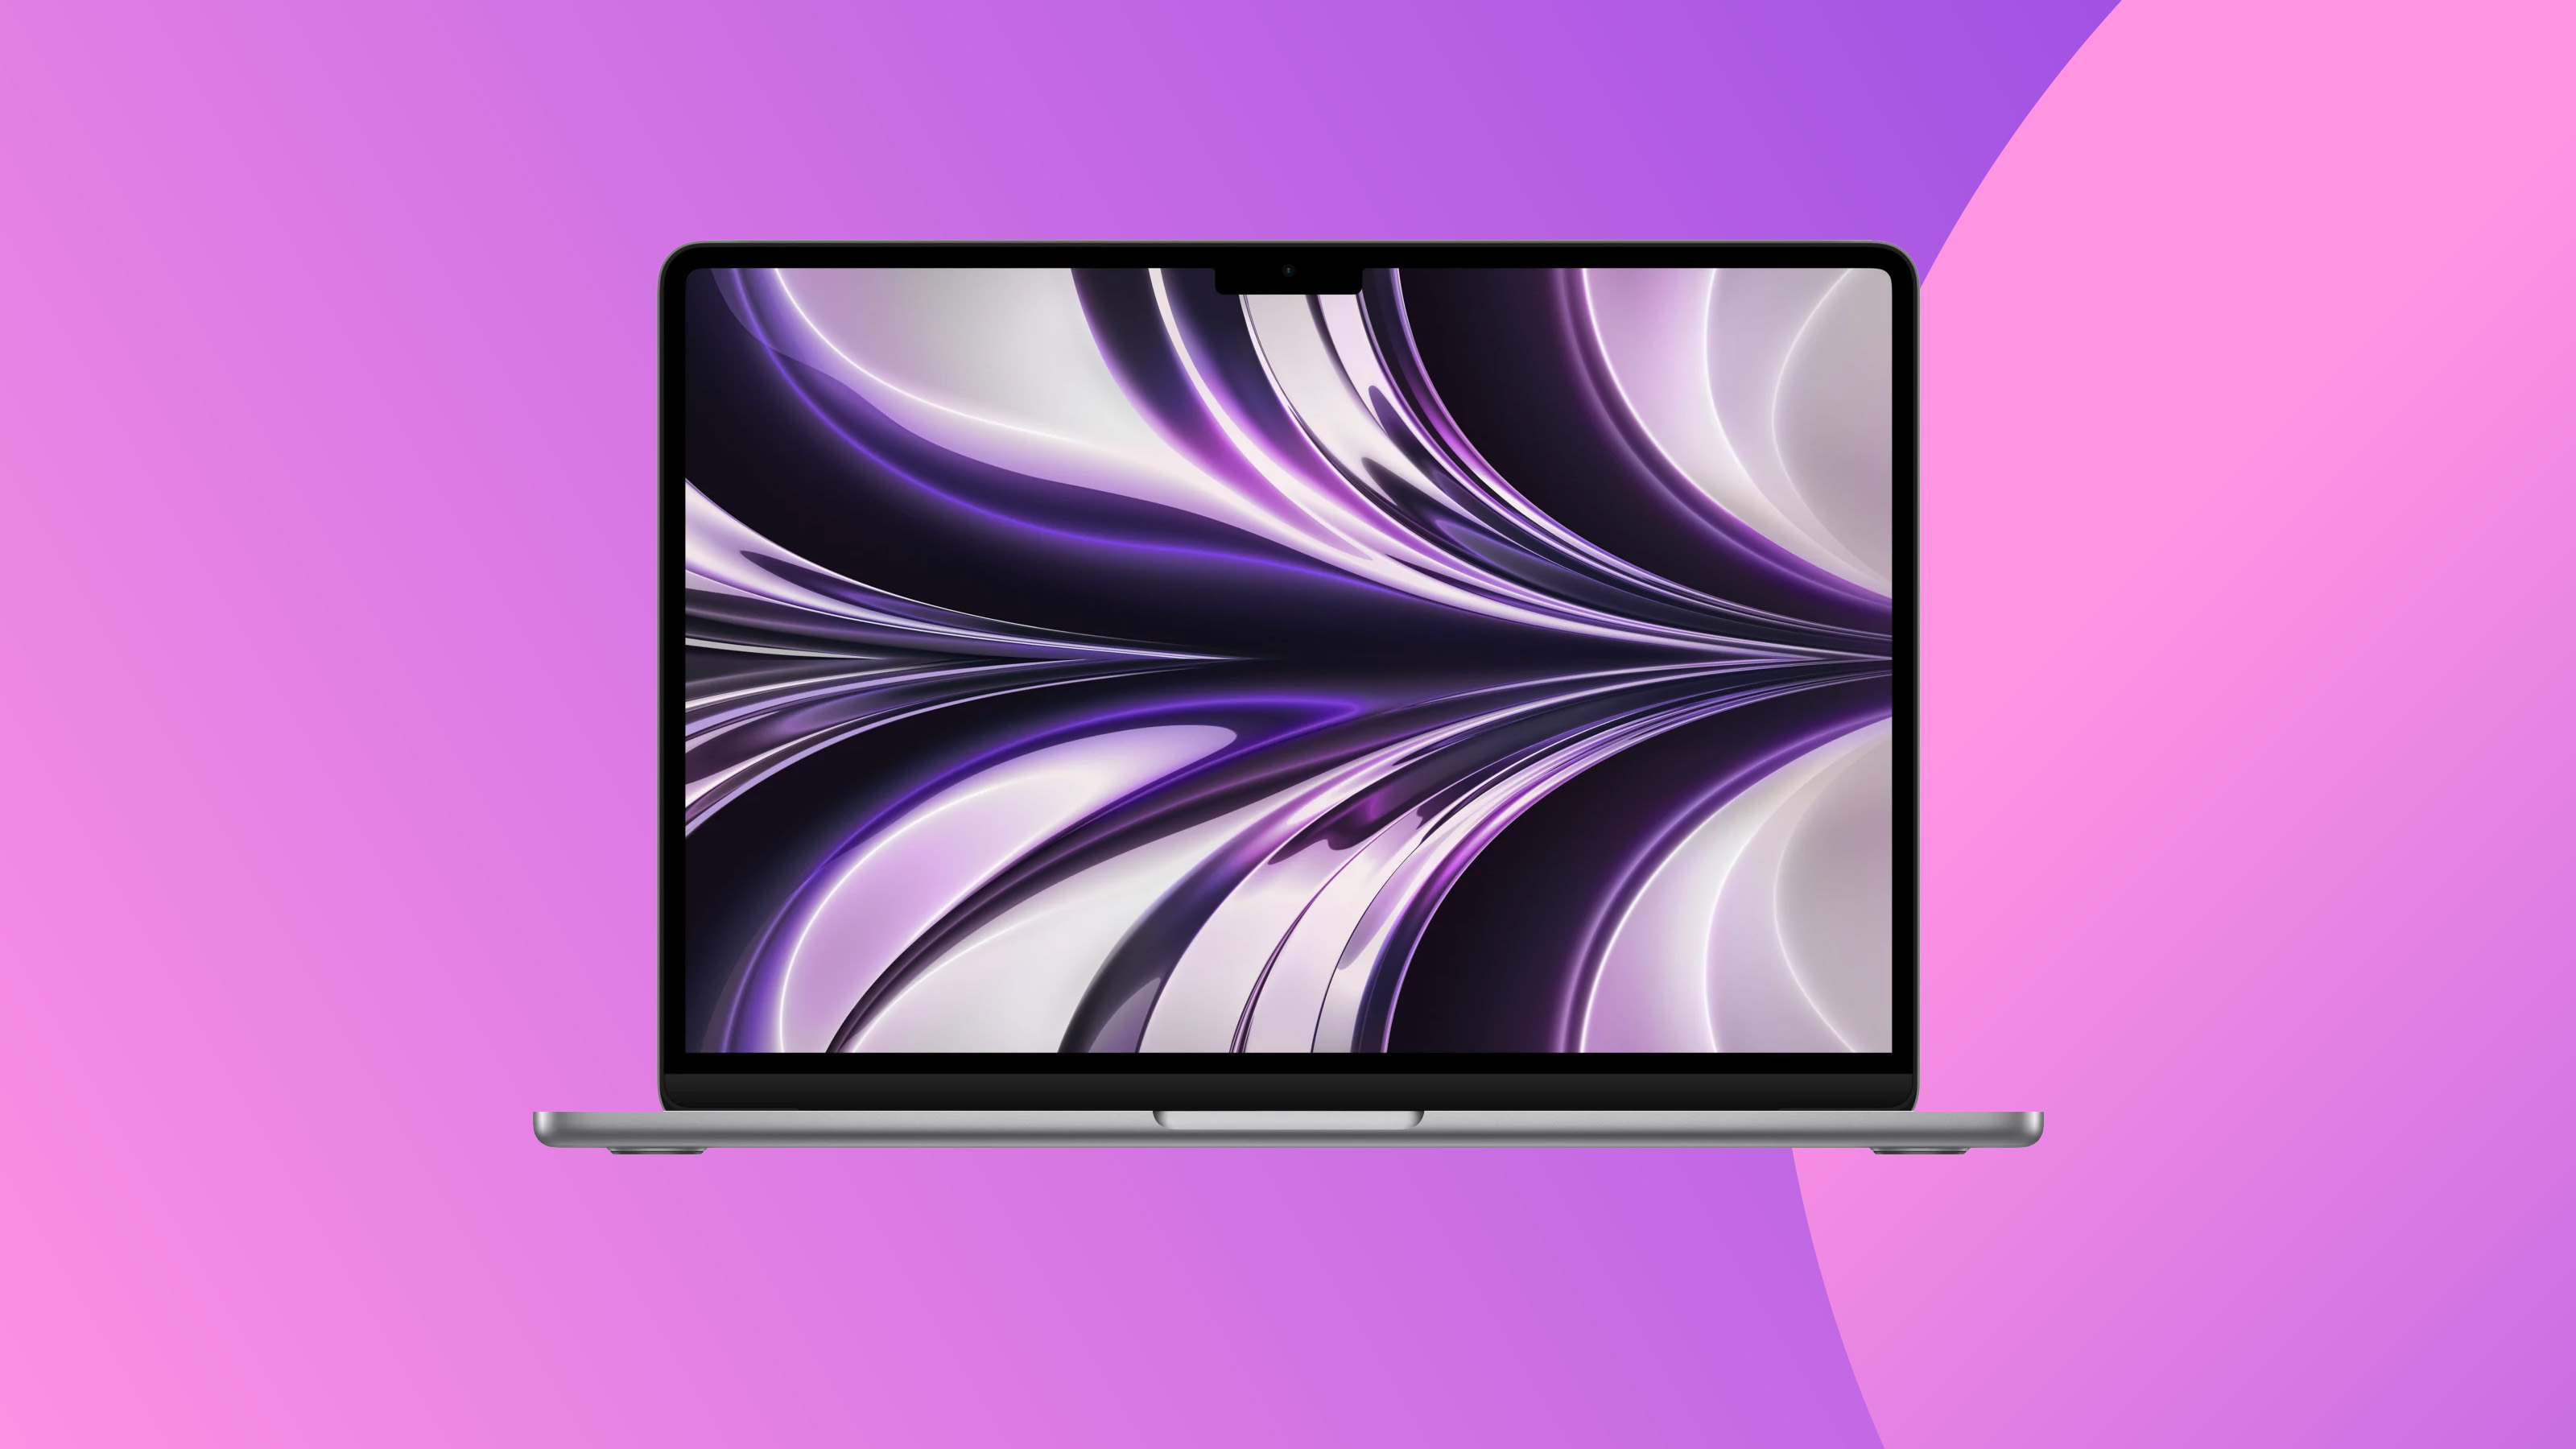 Снимок продукта MacBook Air на красочном фоне.